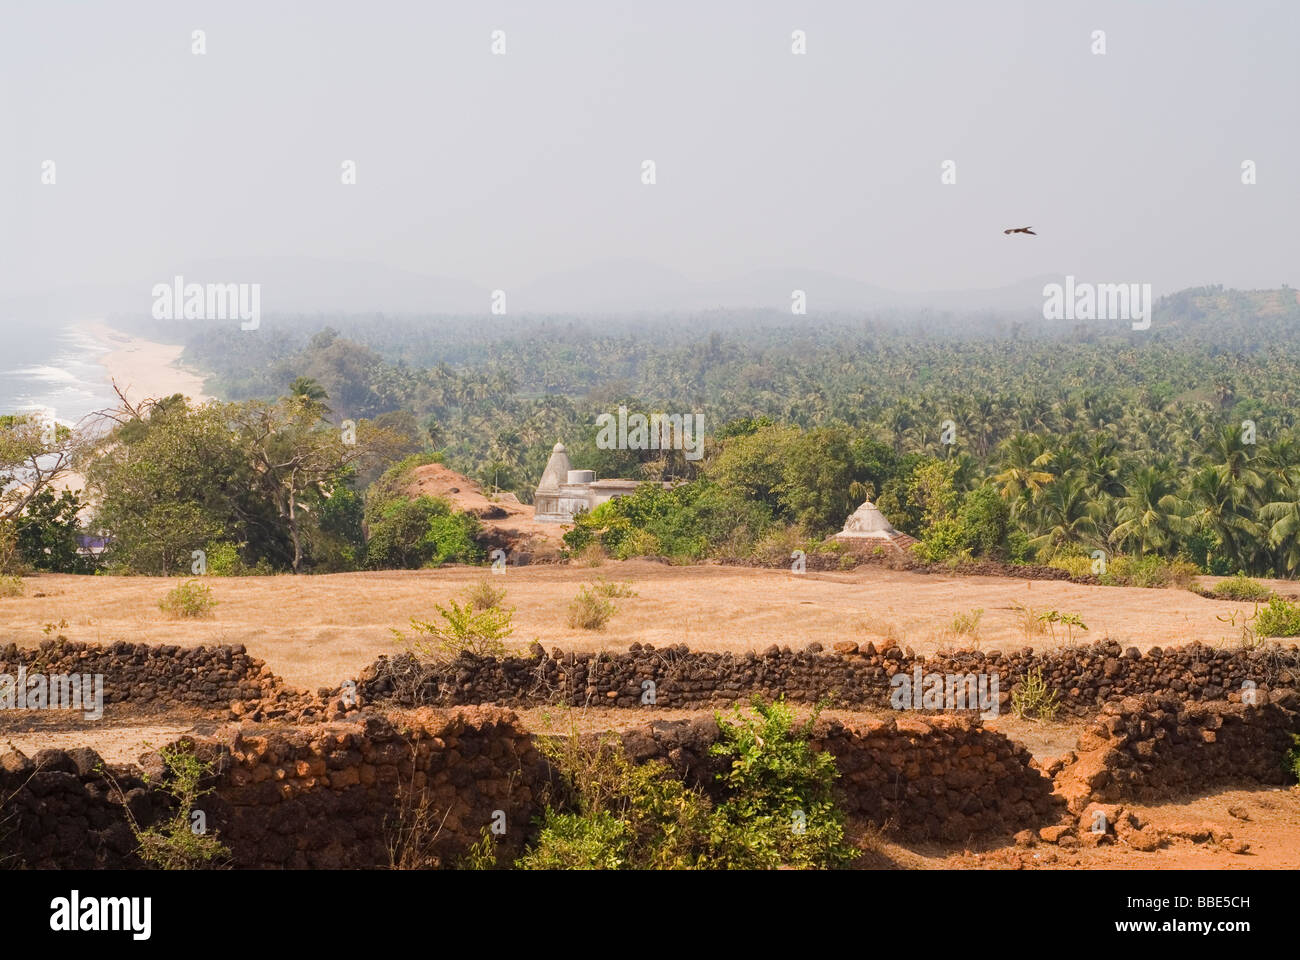 Heilige Stadt Gokarna, Blick vom Berg. Tempel in der Mitte. Dschungel im Hintergrund. Süd-Indien. Adler fliegen. Stockfoto